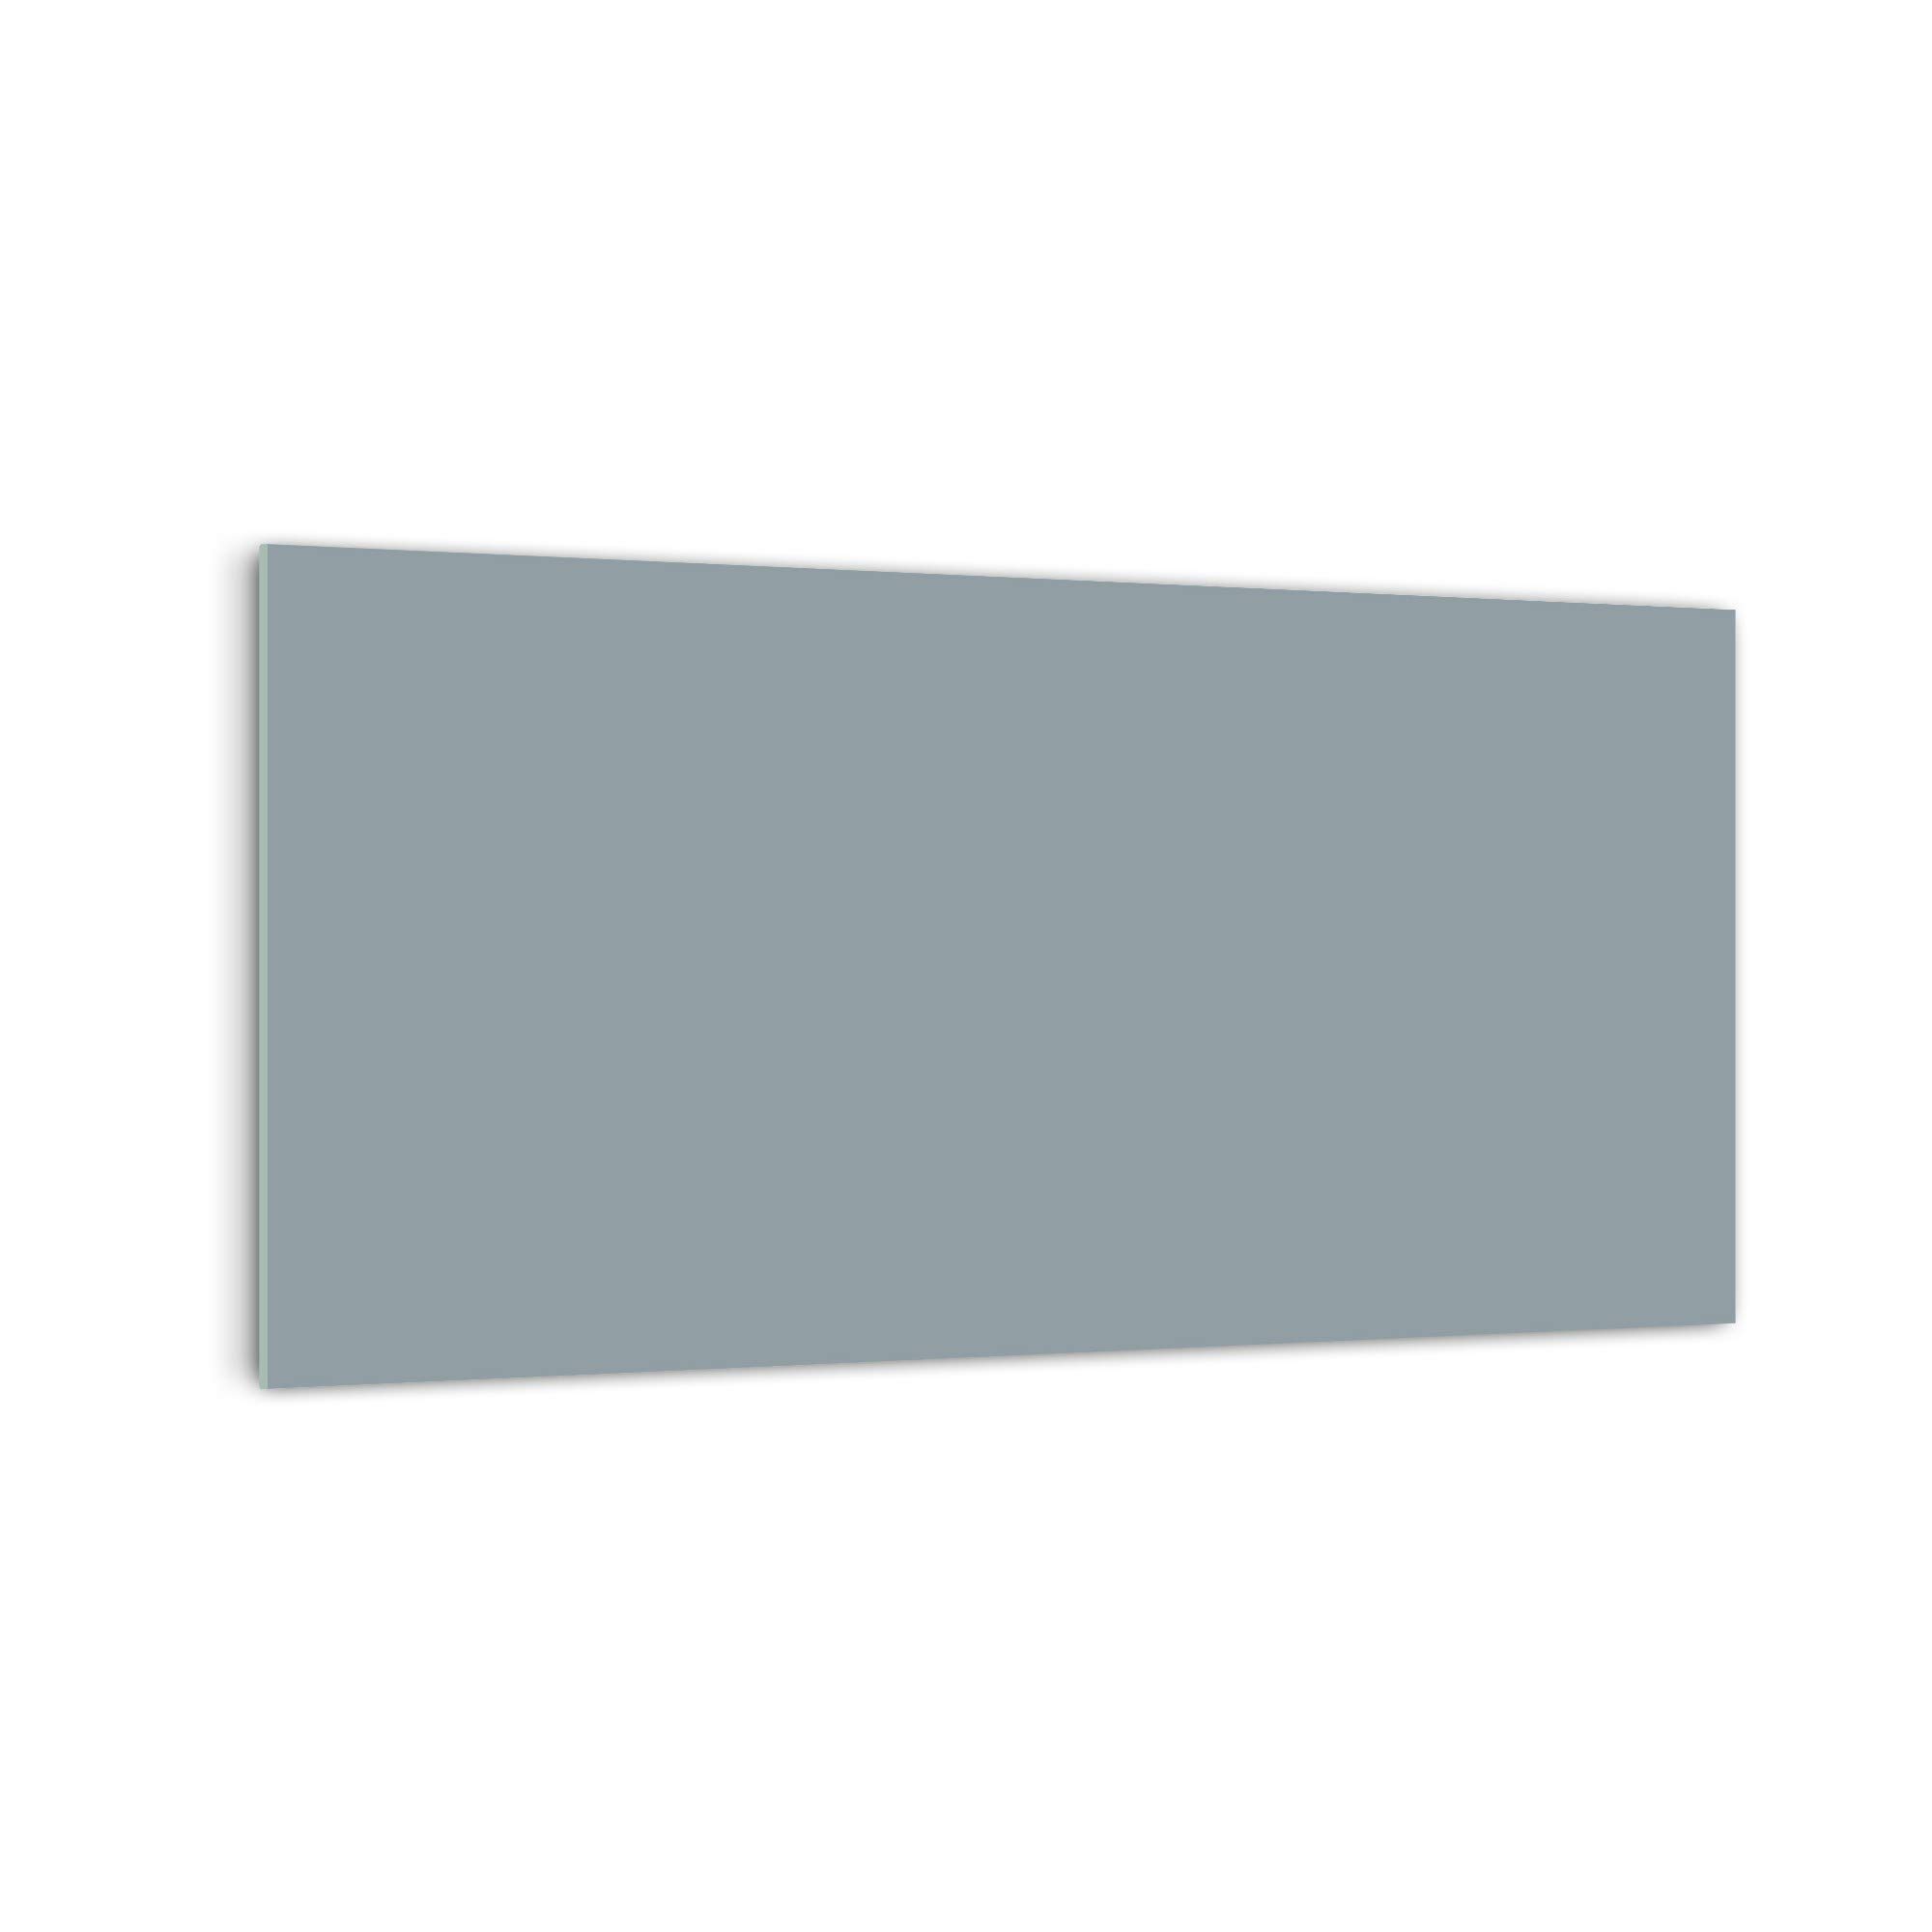 DekoGlas Küchenrückwand 'Grau Einfarbig' in div. Größen, Glas-Rückwand, Wandpaneele, Spritzschutz & Fliesenspiegel